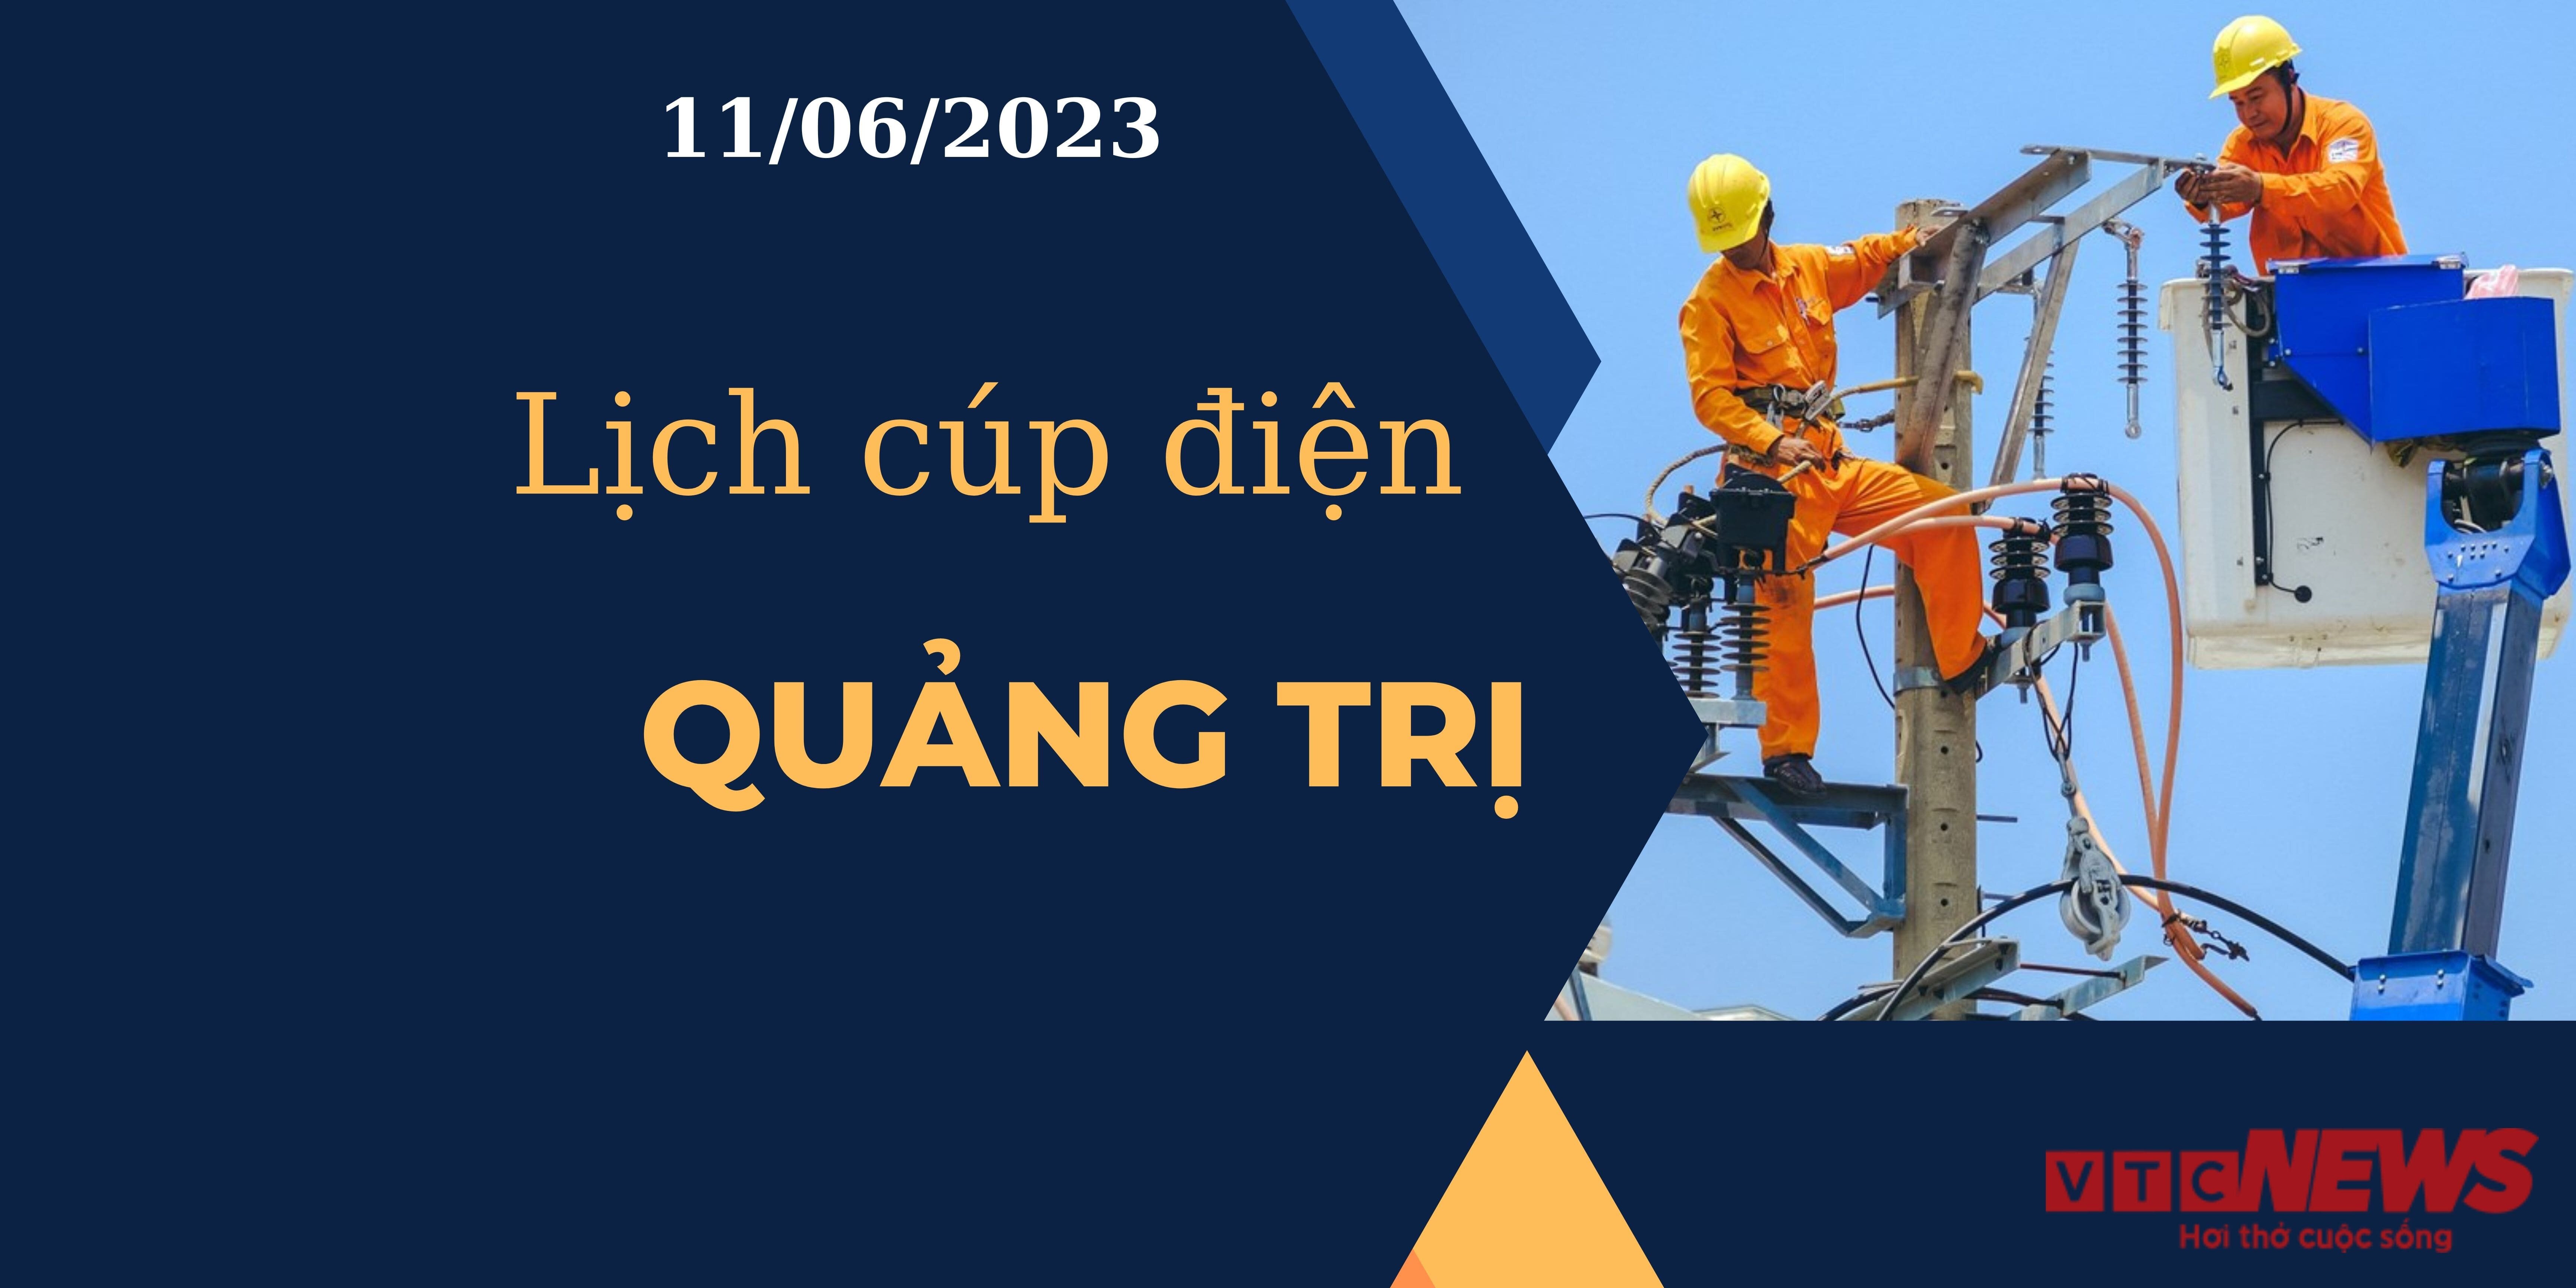 Lịch cúp điện hôm nay tại Quảng Trị ngày 11/06/2023 - 1